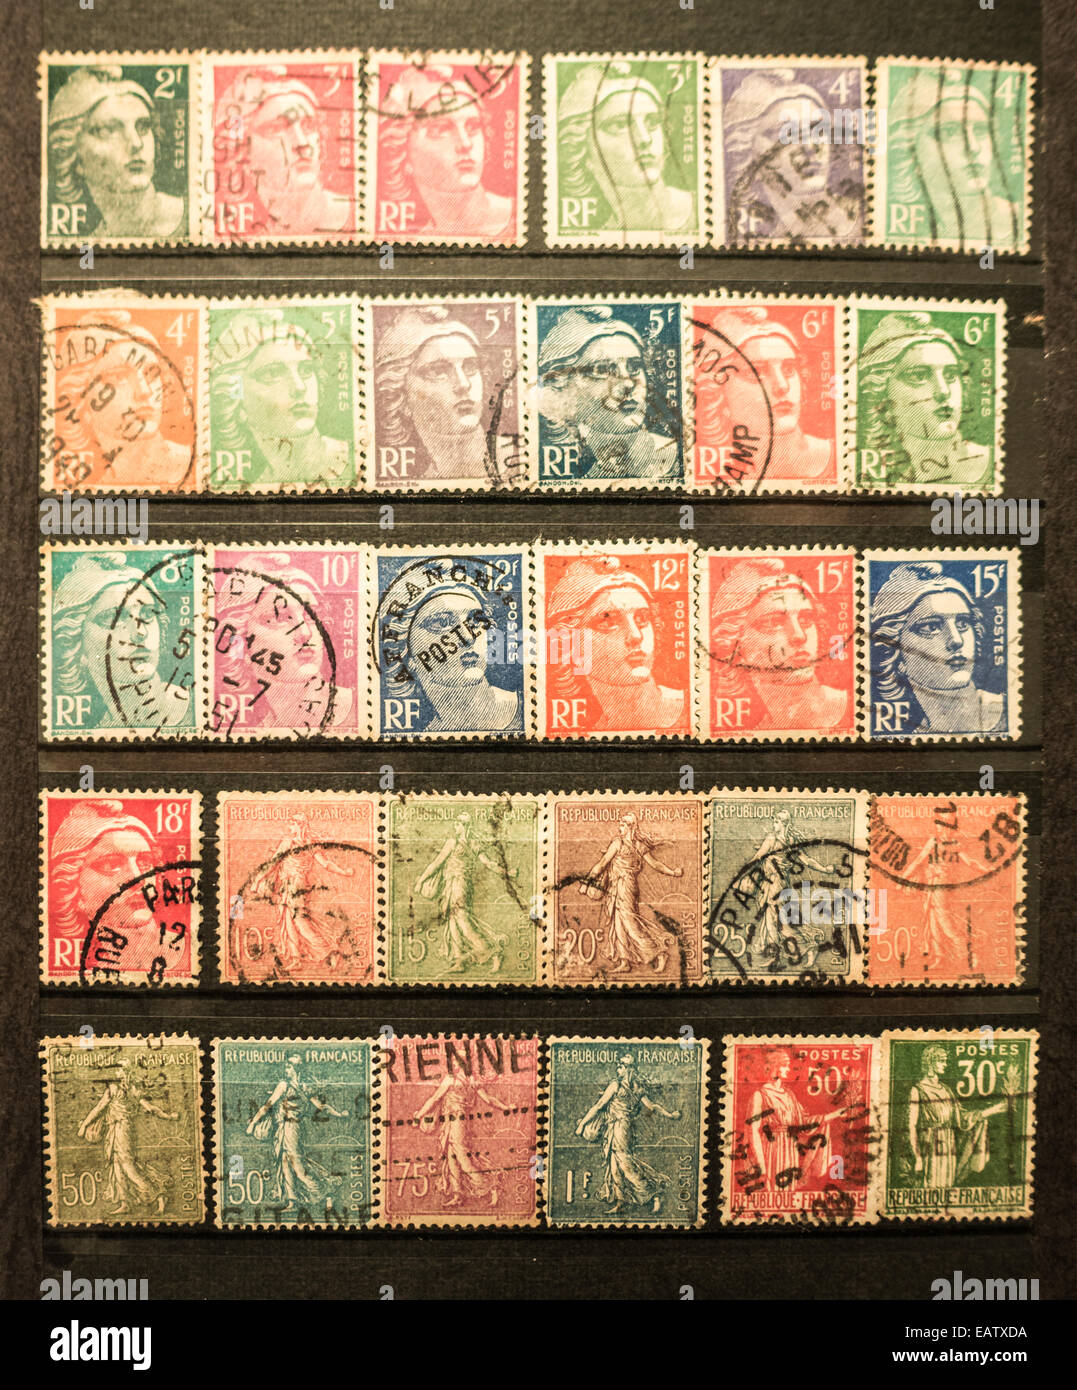 Colección de sellos franceses organizados en la página del álbum Foto de stock